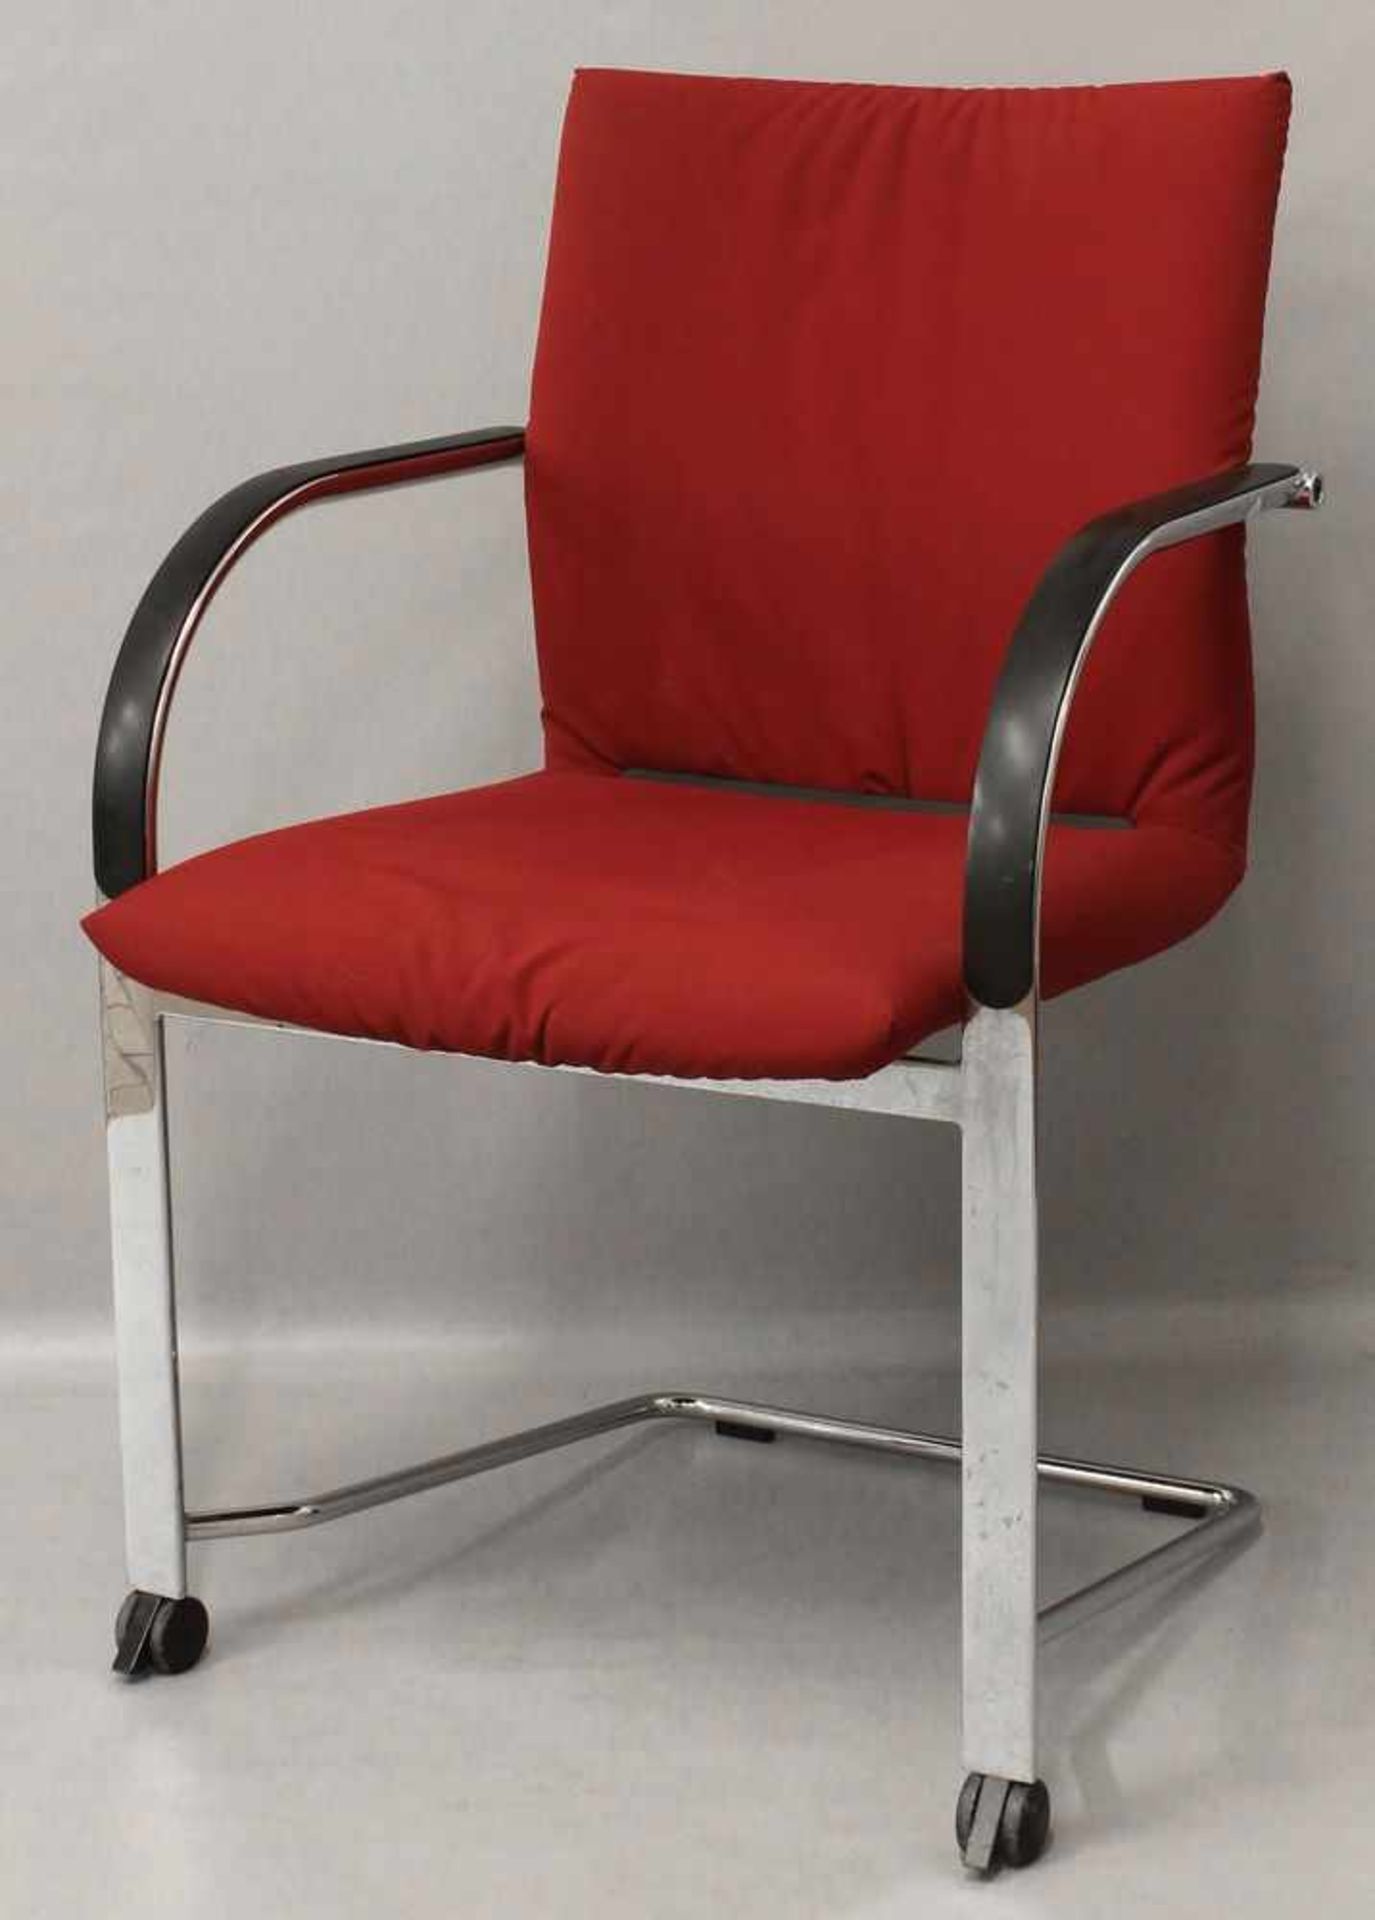 Vogtherr, Burkhard (geb. 1942)"Spin Arm Chair". Verchromtes Gestell, vorne mit Rollen, roter